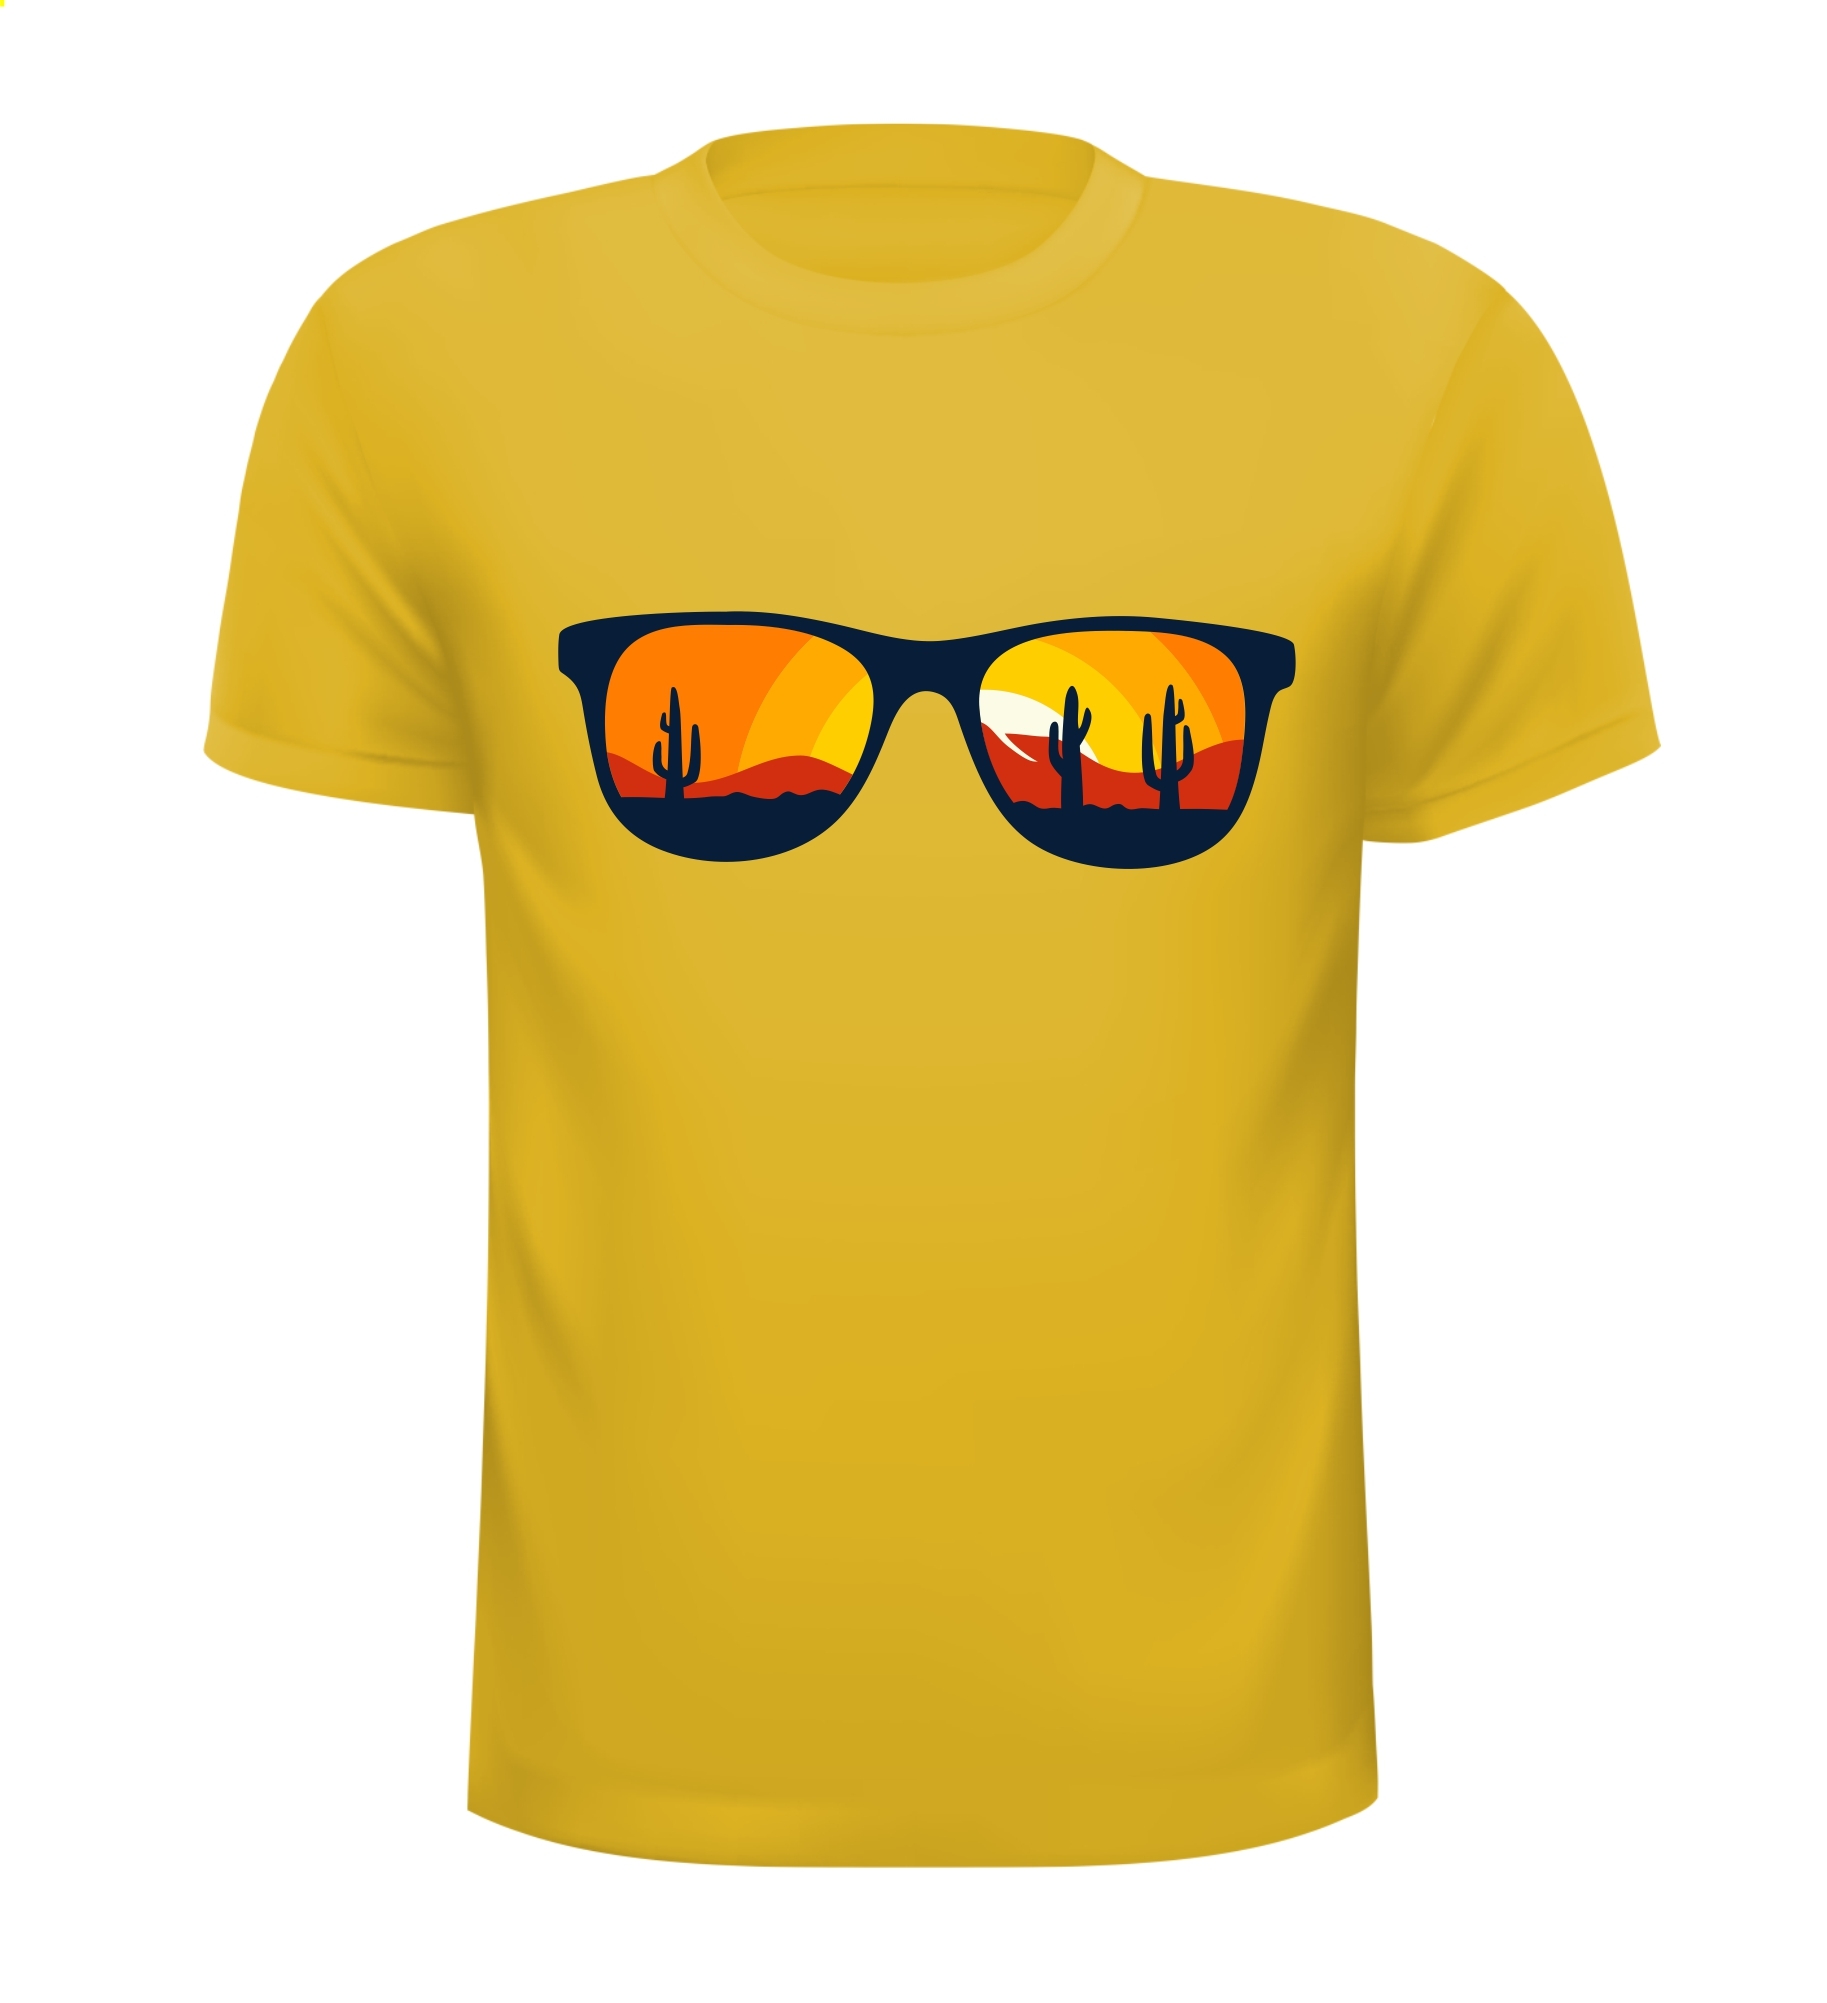 T-shirt met opdruk van een zonnebril die kijkt op de woestijn